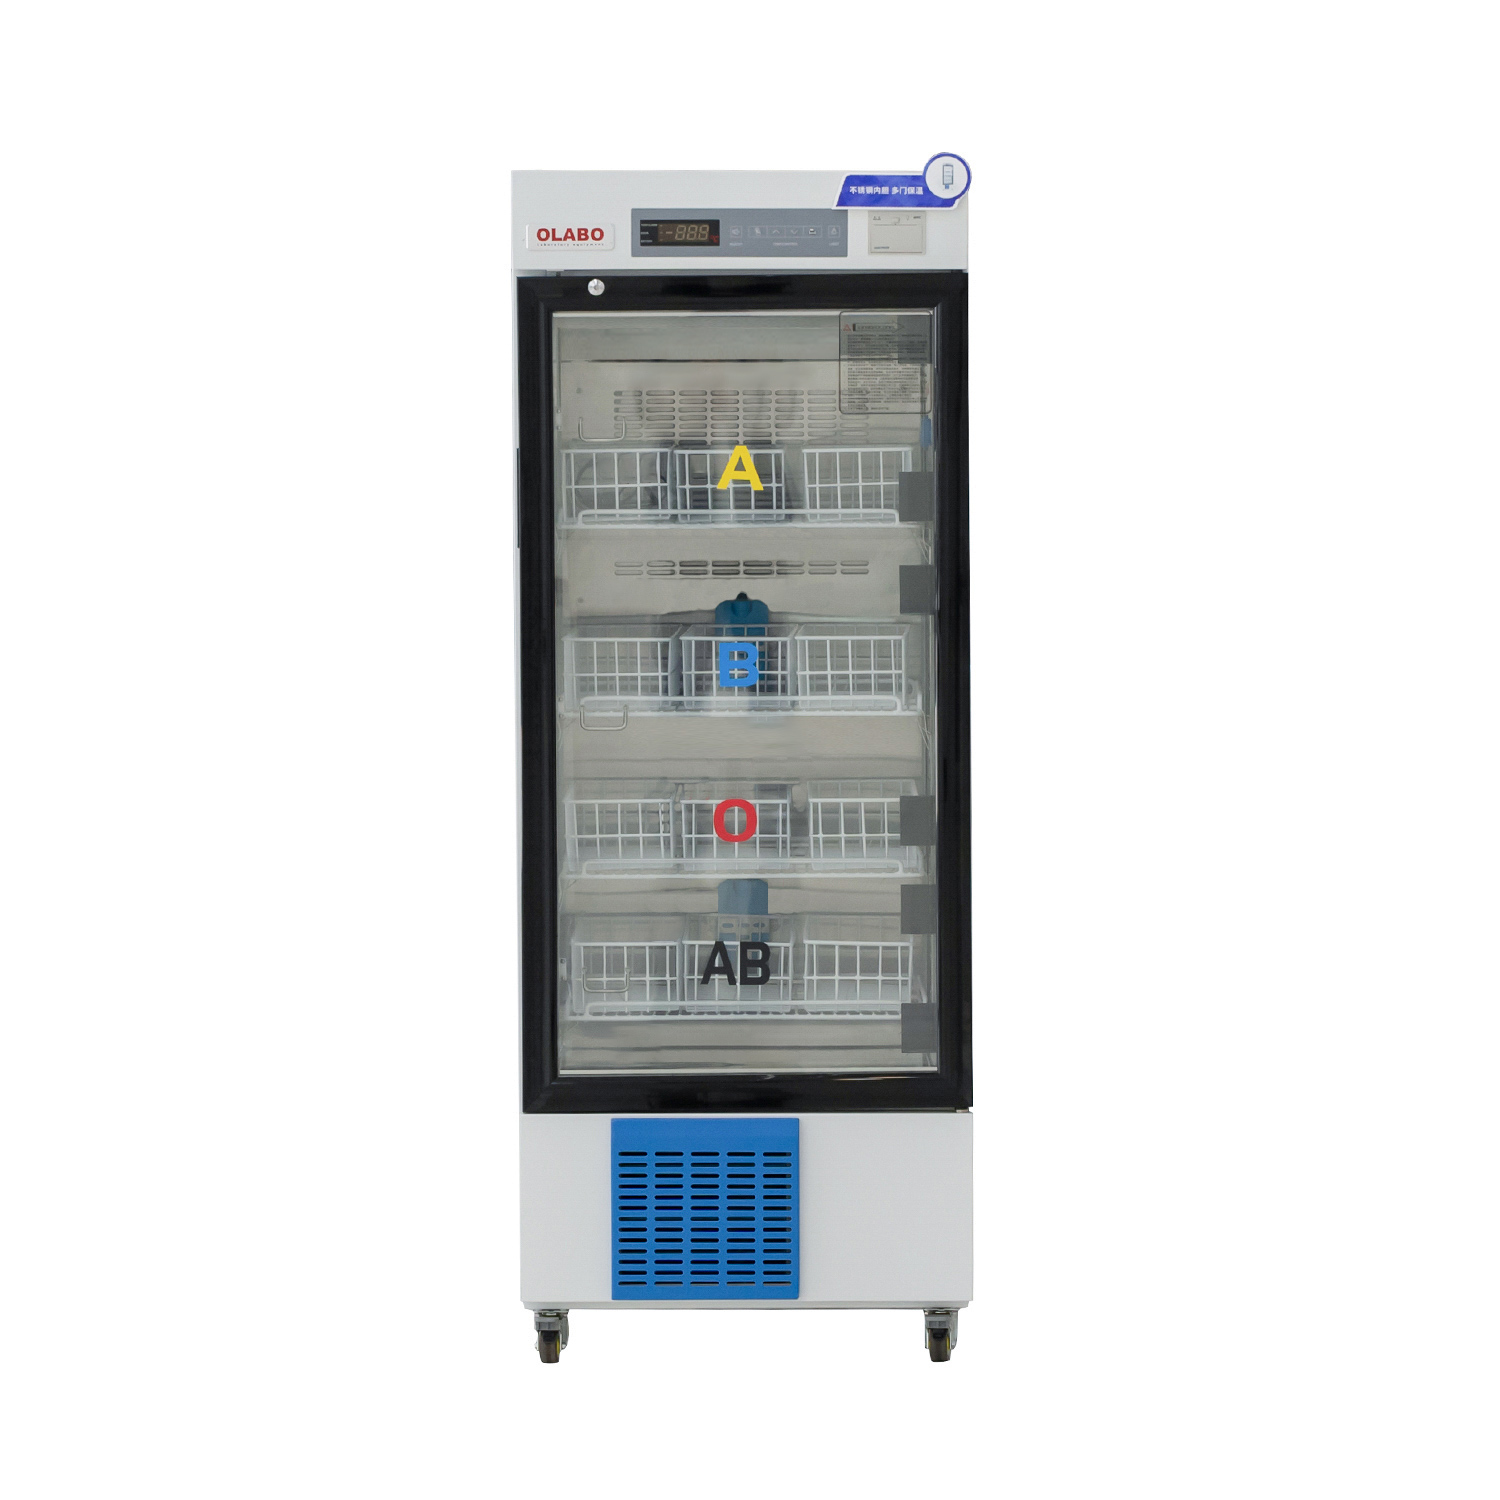 ဓာတ်ခွဲခန်းအတွက် 4 ဒီဂရီစင်တီဂရိတ်ရှိ သွေးလှူဘဏ် ရေခဲသေတ္တာ